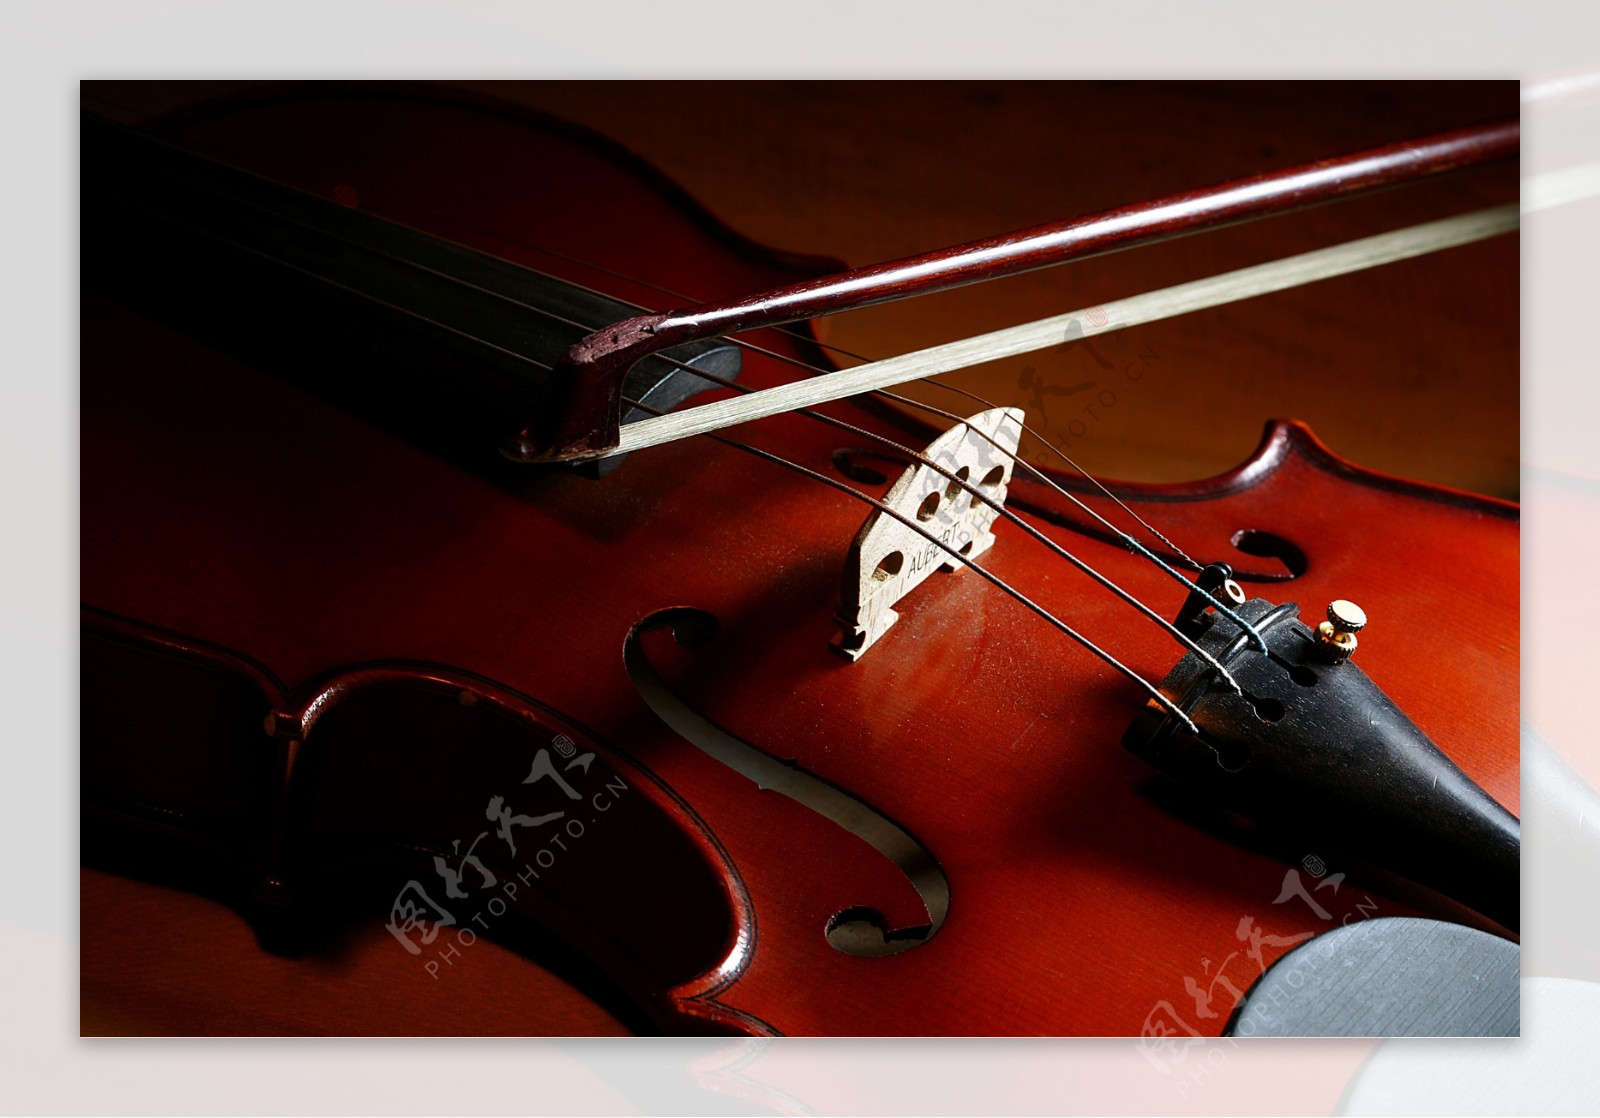 壁纸1280×1024小提琴图片壁纸 beautiful Violin Desktop Wallpaper壁纸,唯美艺术摄影壁纸图片-摄影壁纸 ...